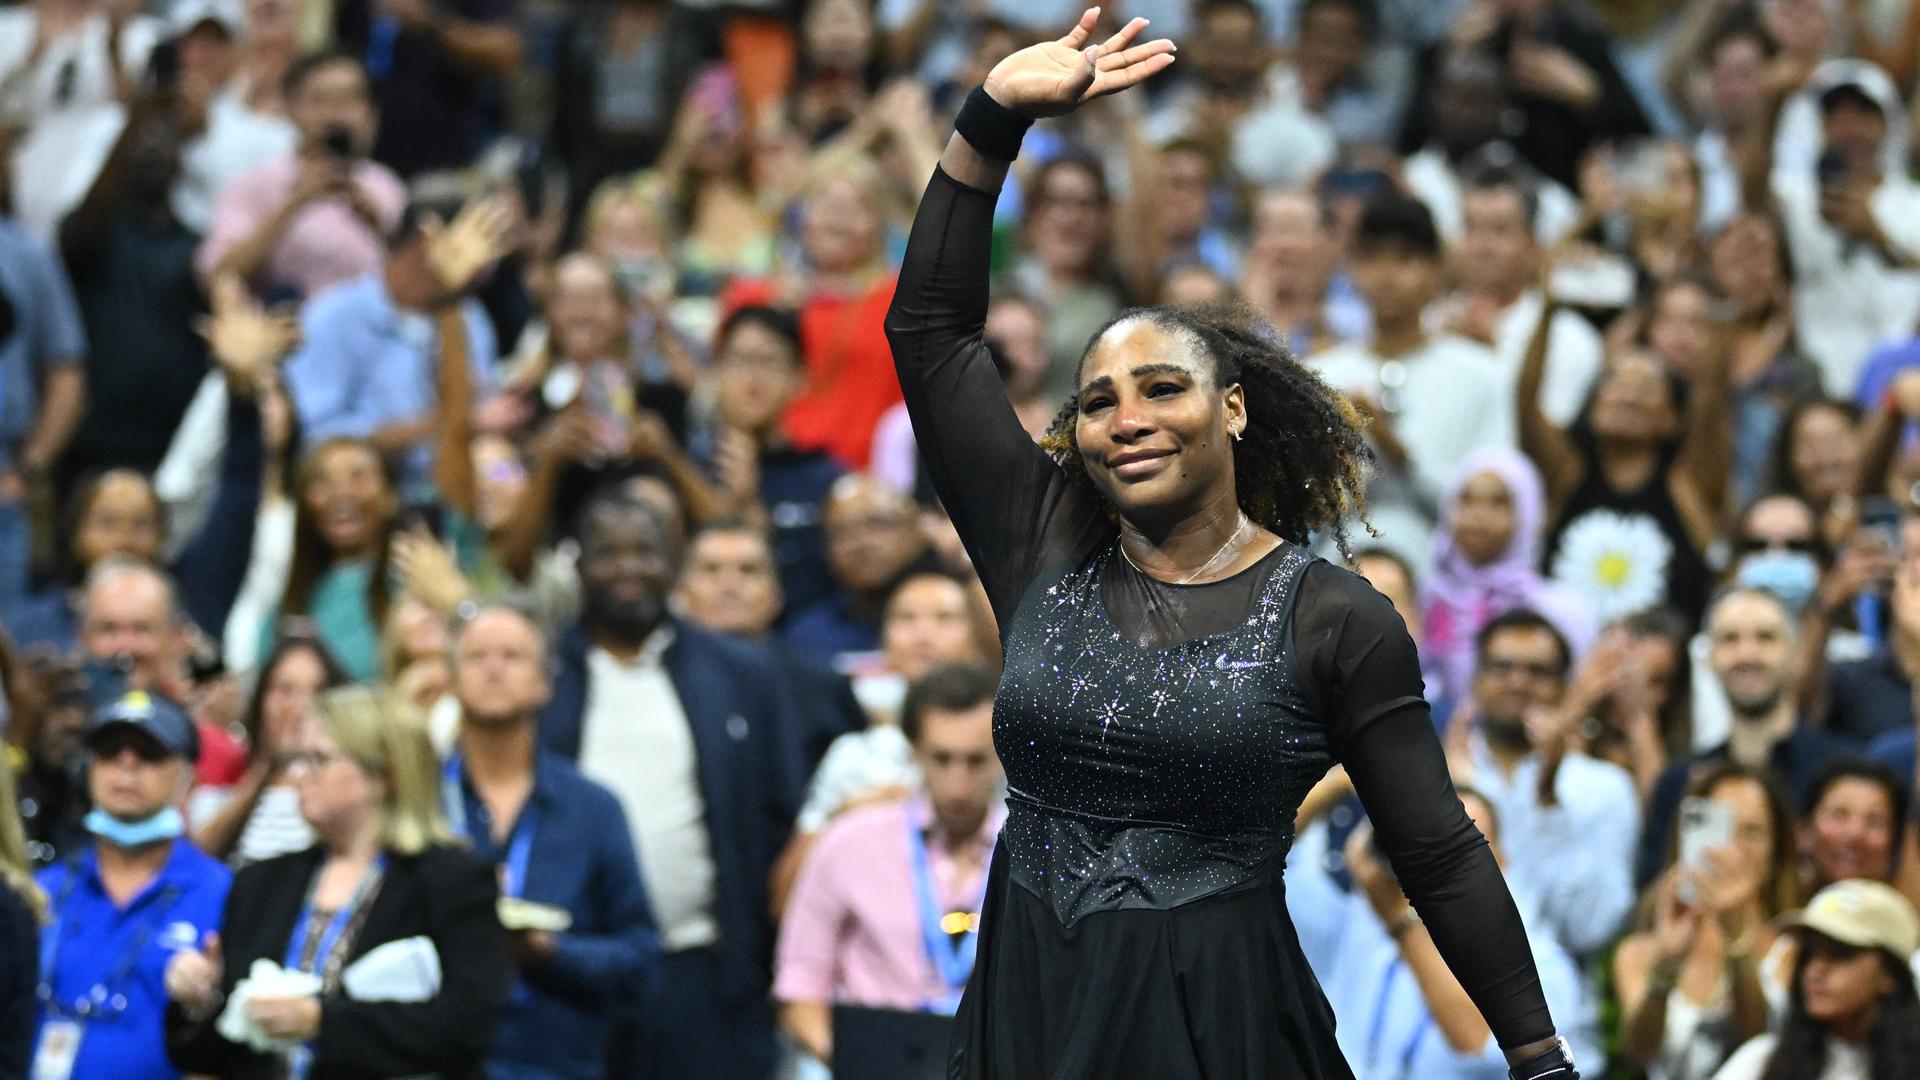 Serena Williams bedankt sich zum Abschied bei ihren Fans 